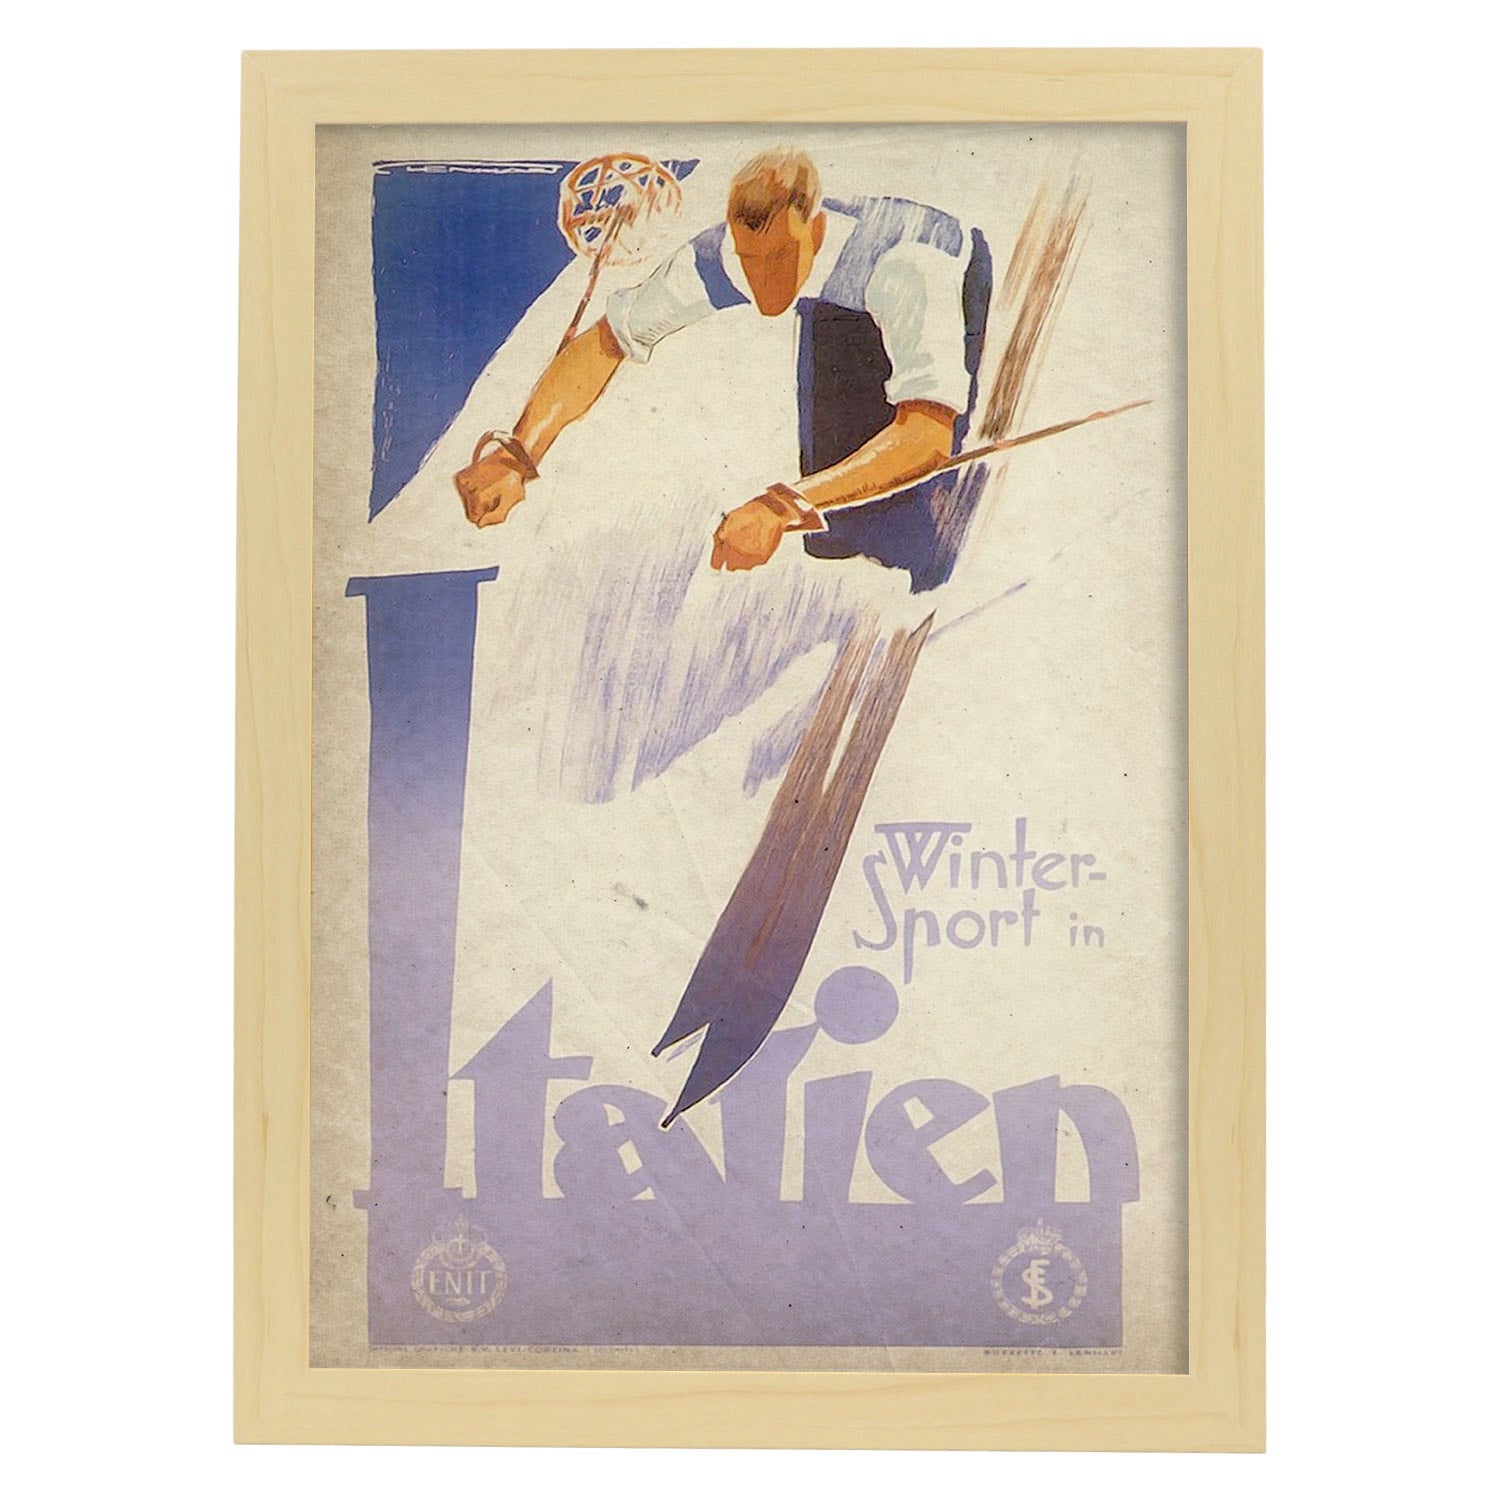 Poster vintage de Ski en Italia. con imágenes vintage y de publicidad antigua.-Artwork-Nacnic-A3-Marco Madera clara-Nacnic Estudio SL